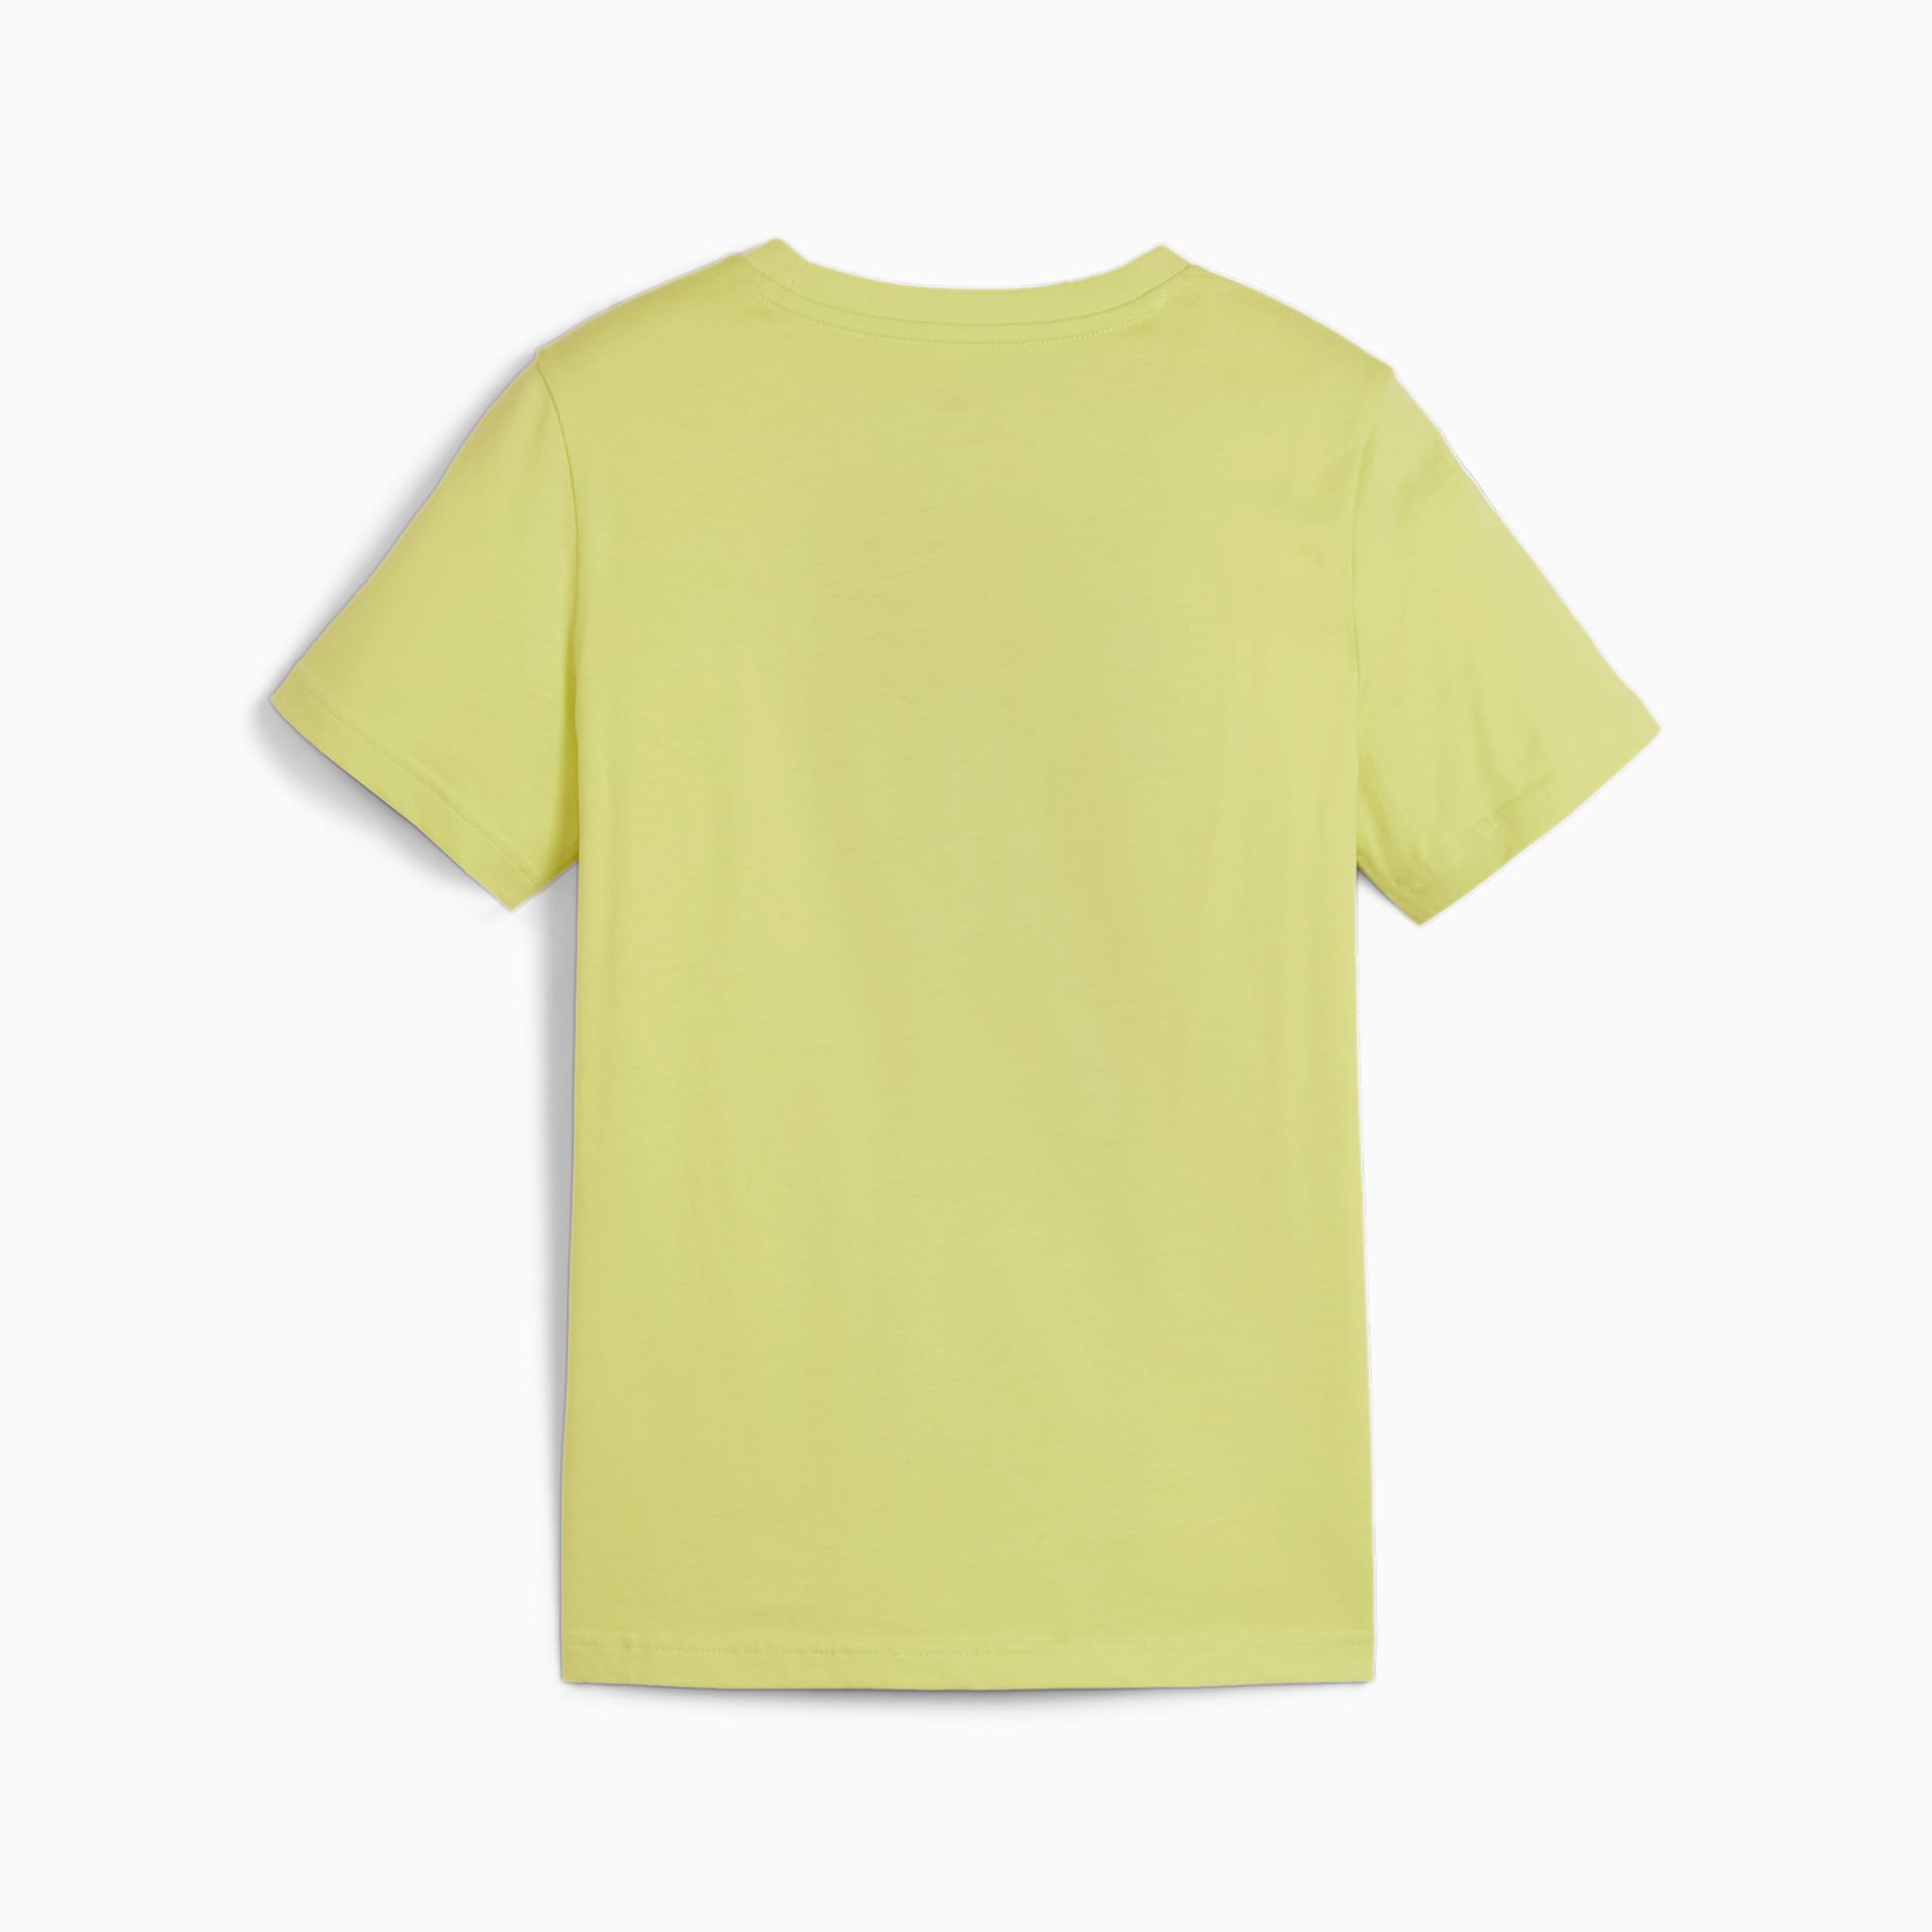 PUMA Power T-Shirt, Lime Sheen, Size 128, Clothing